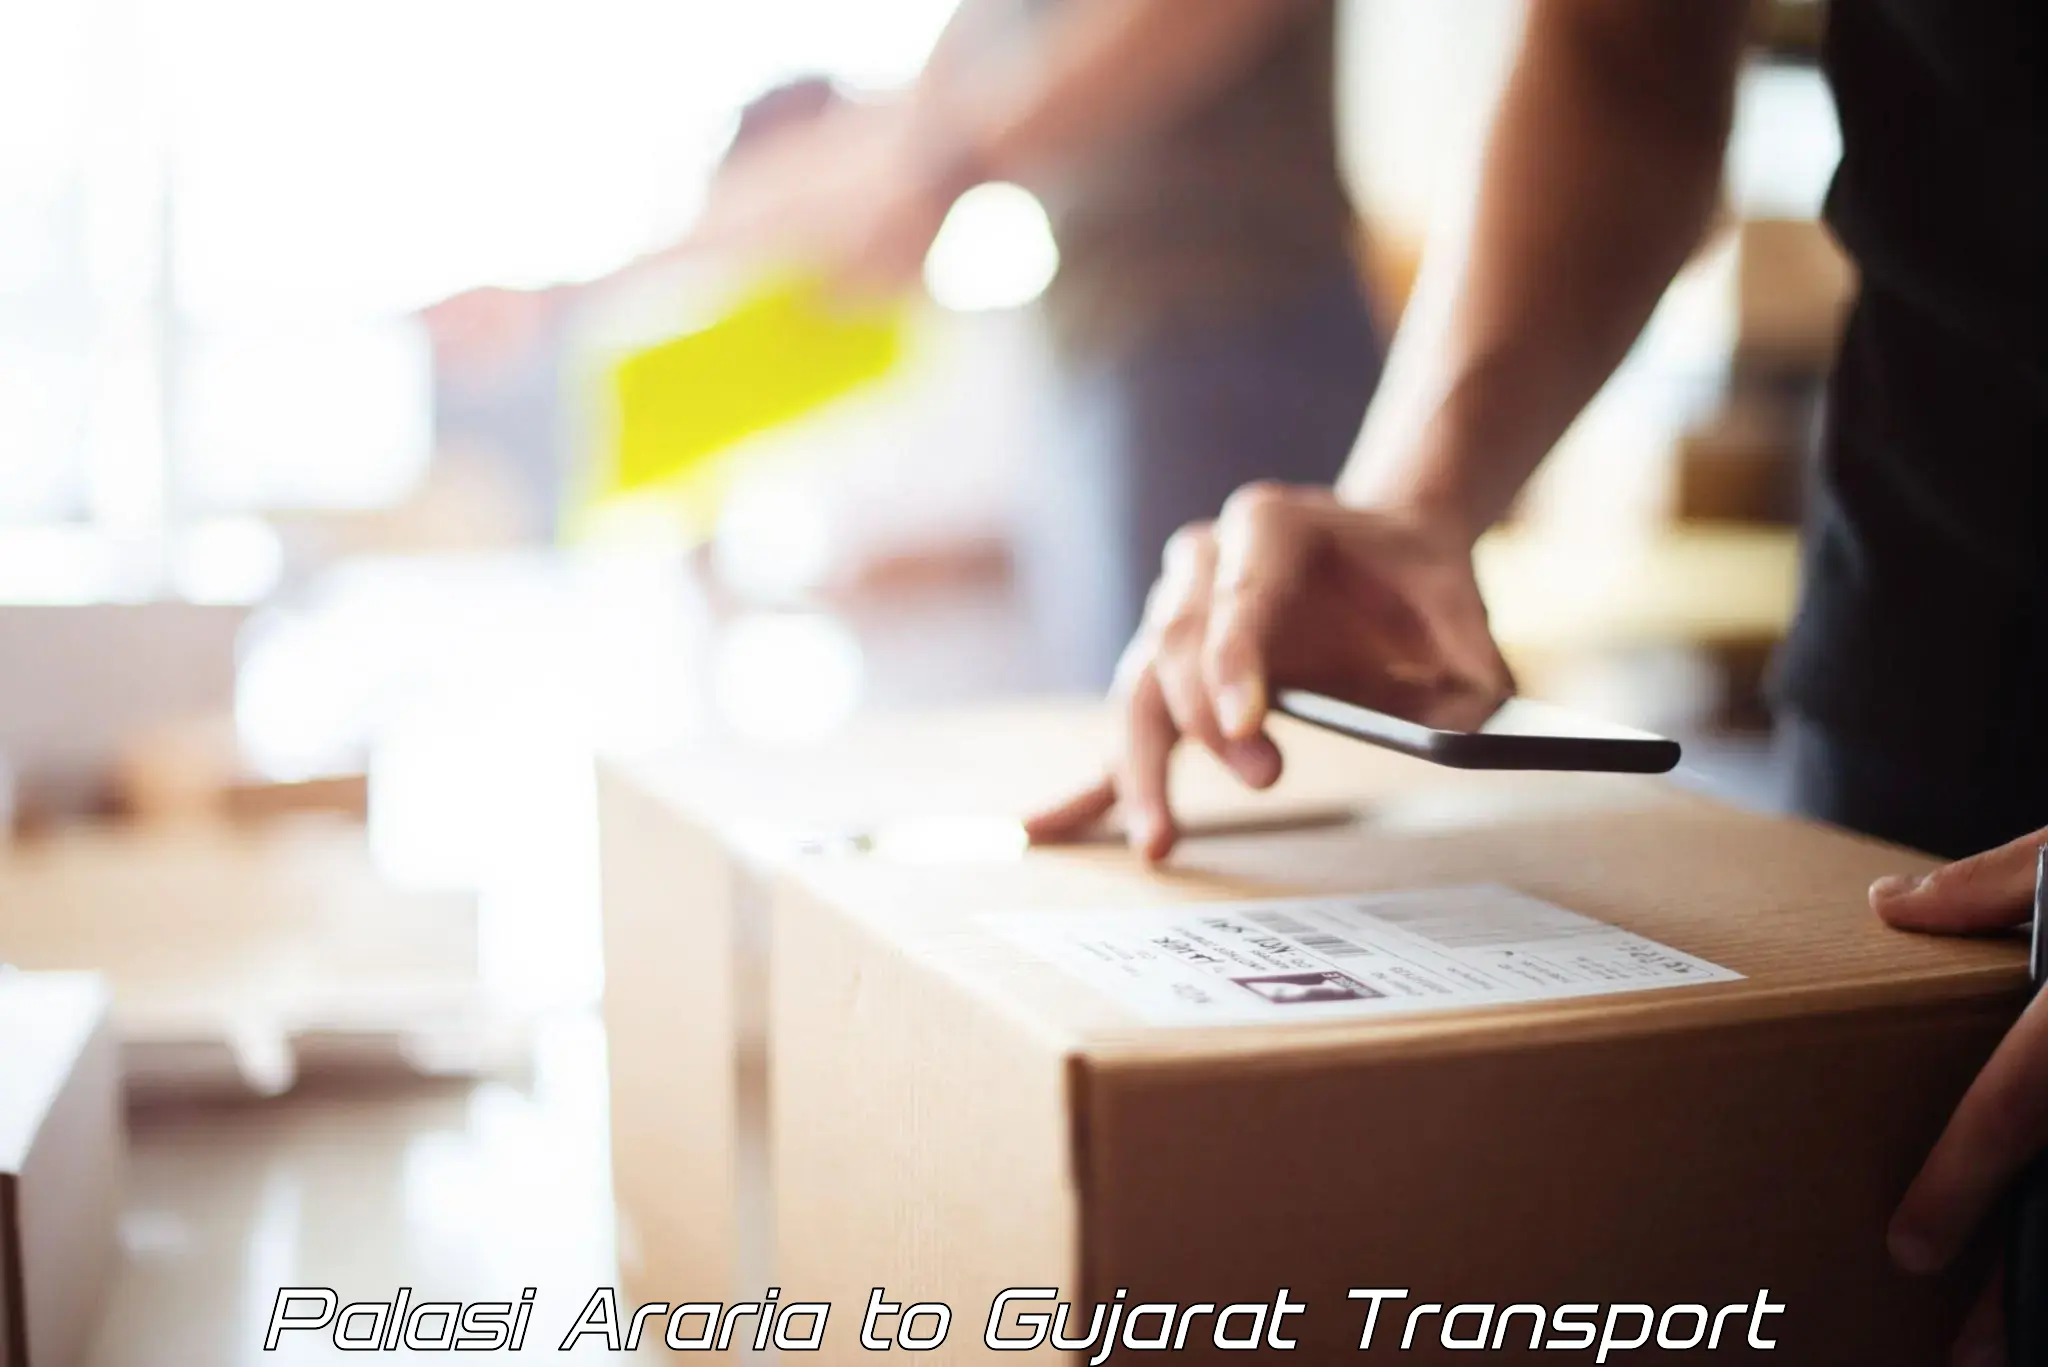 Online transport booking Palasi Araria to Gujarat